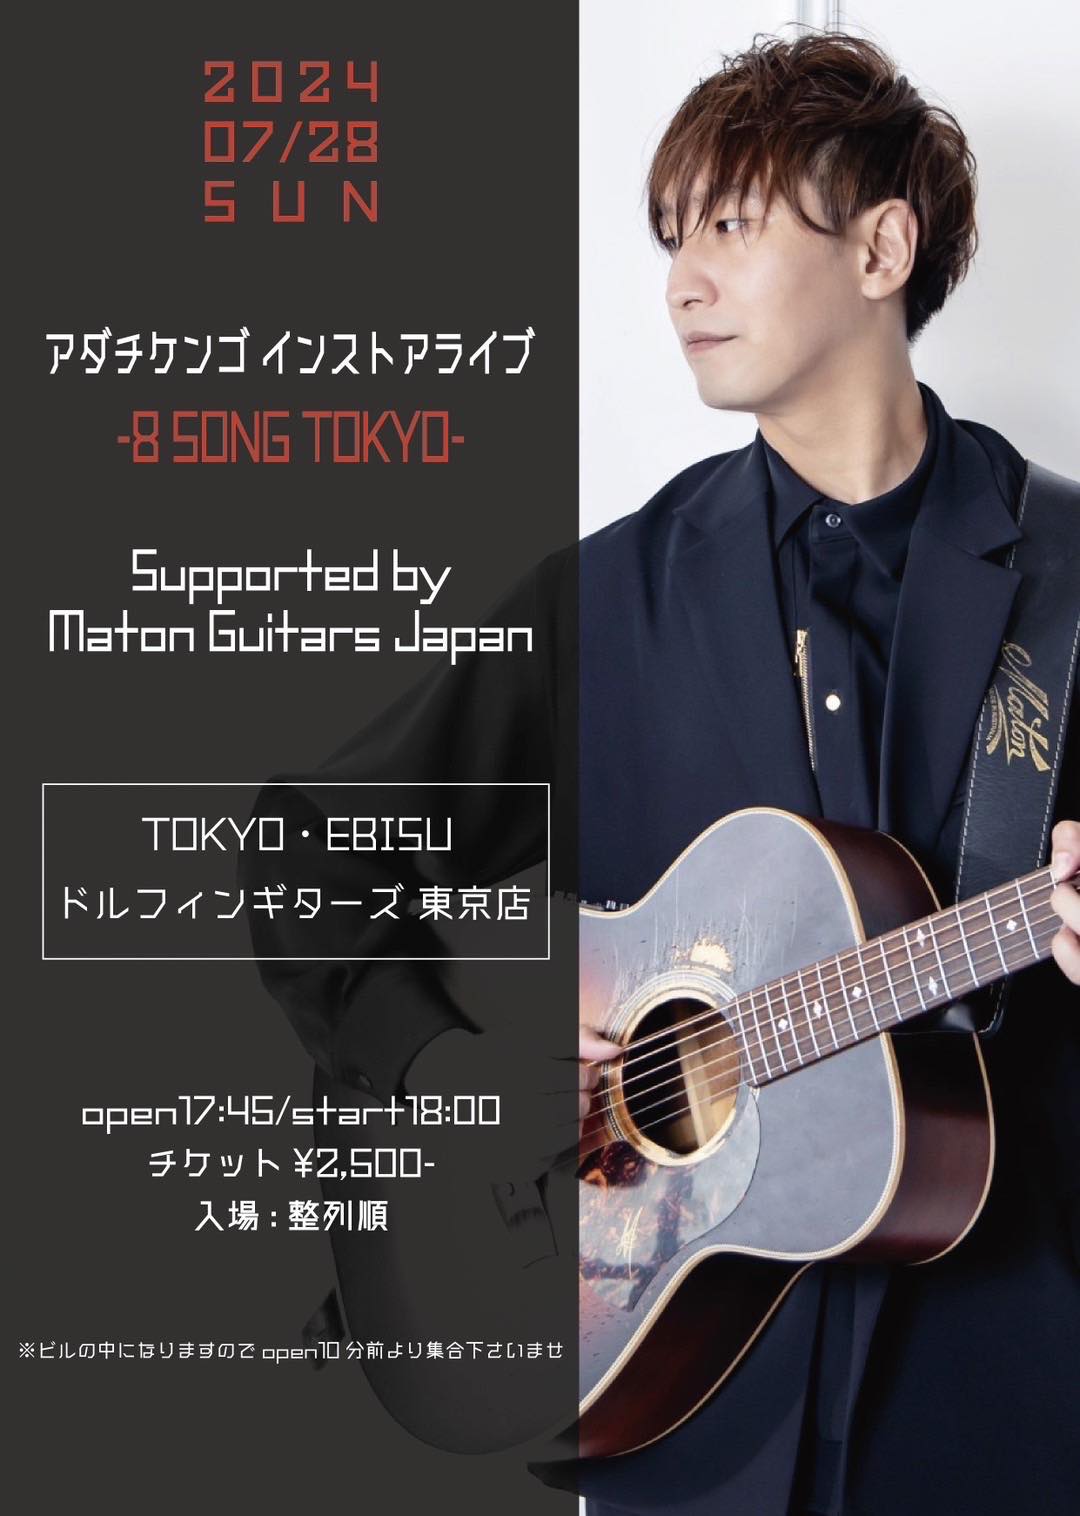 【東京店】アダチケンゴ インストアライブ -8 SONG TOKYO- Supported by Maton Guitars Japanのバナー